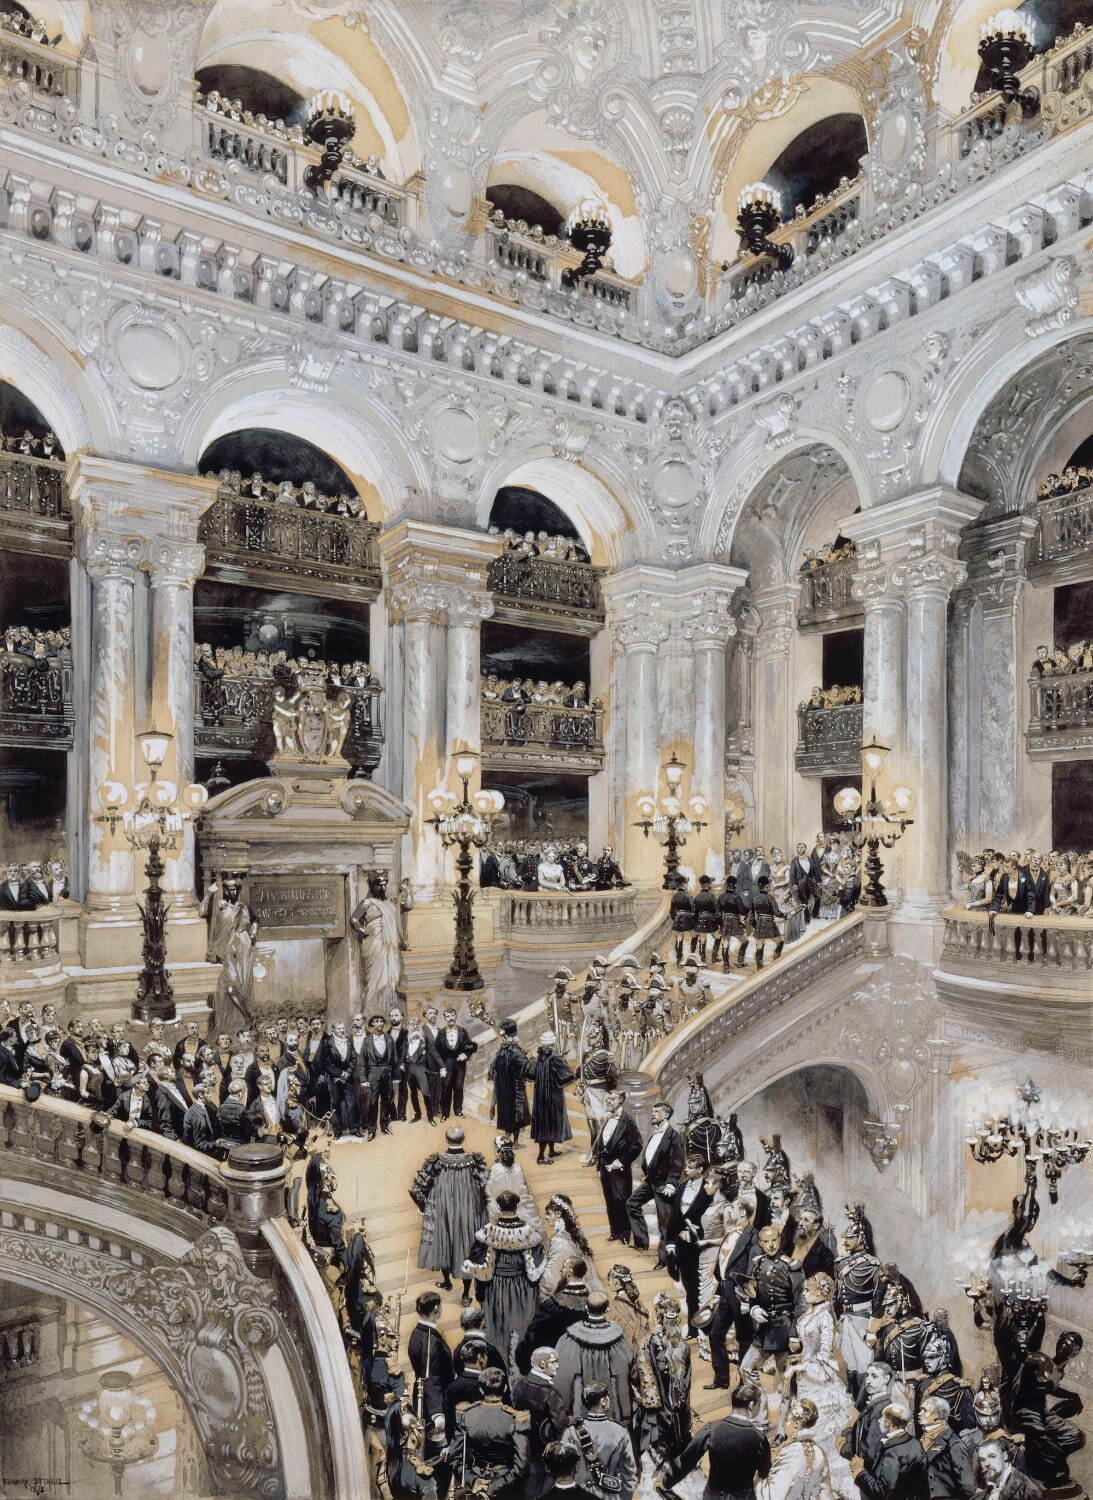 ジャン＝バティスト・エドゥアール・ドゥタイユ《オペラ座の落成式、1875年1月5日》1878年 オルセー美術館(ヴェルサイユ宮殿に寄託)
Photo ©RMN-Grand Palais (Château de Versailles) / Gérard Blot/ distributed by AMF